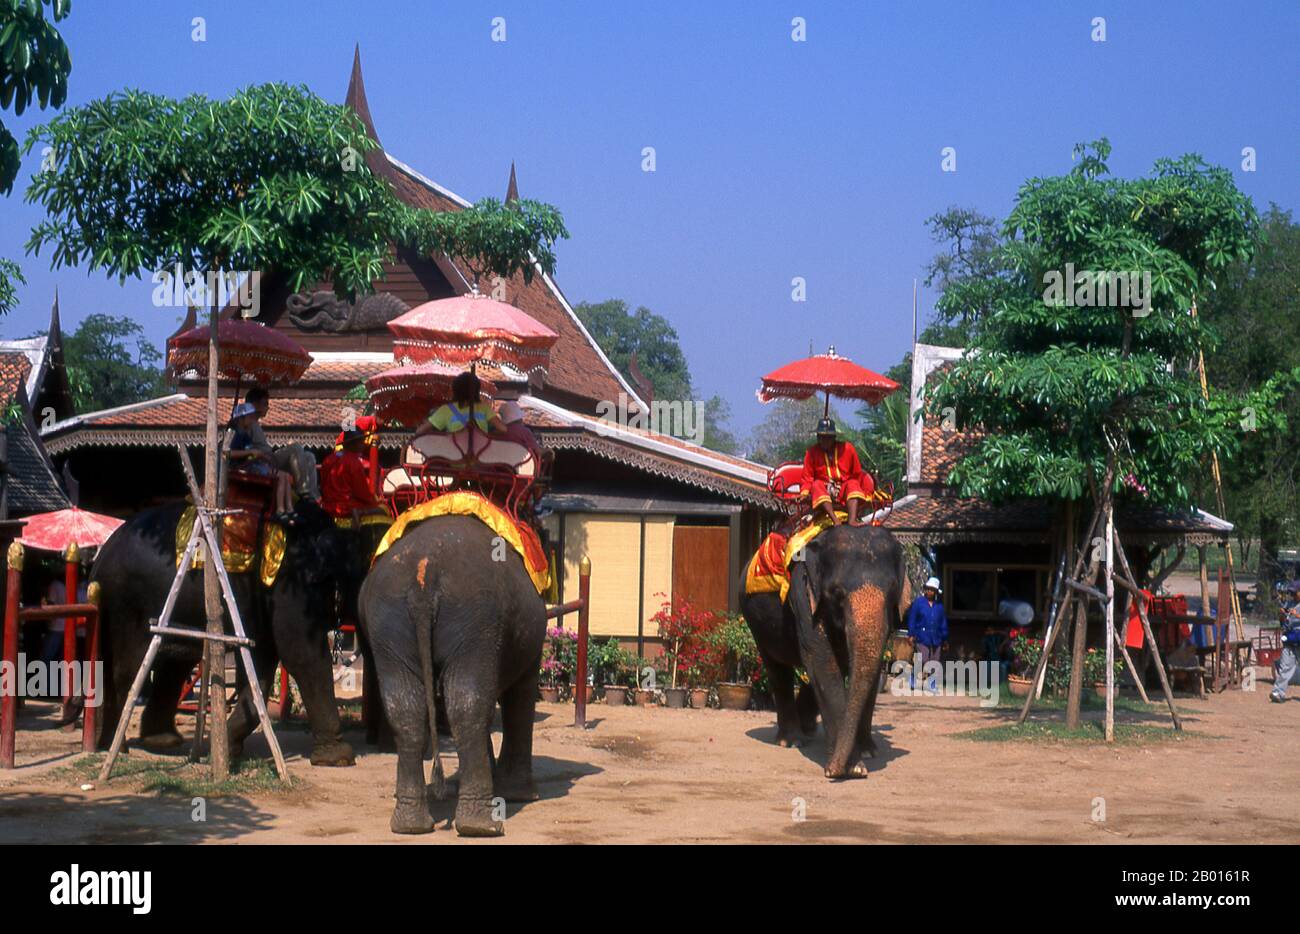 Thailandia: Elefanti al Parco storico di Ayutthaya. L'elefante asiatico o asiatico (Elephas maximus) è l'unica specie vivente del genere Elephas ed è distribuito in tutto il subcontinente e nell'Asia sudorientale dall'India nell'ovest al Borneo nell'est. Gli elefanti asiatici sono il più grande animale vivente di terra in Asia. In Thailandia vivono circa 2,600 elefanti, la maggior parte dei quali è domicilata. Ayutthaya (Ayudhya) era un regno siamese che esisteva dal 1351 al 1767. Ayutthaya era amichevole verso i commercianti stranieri. Foto Stock